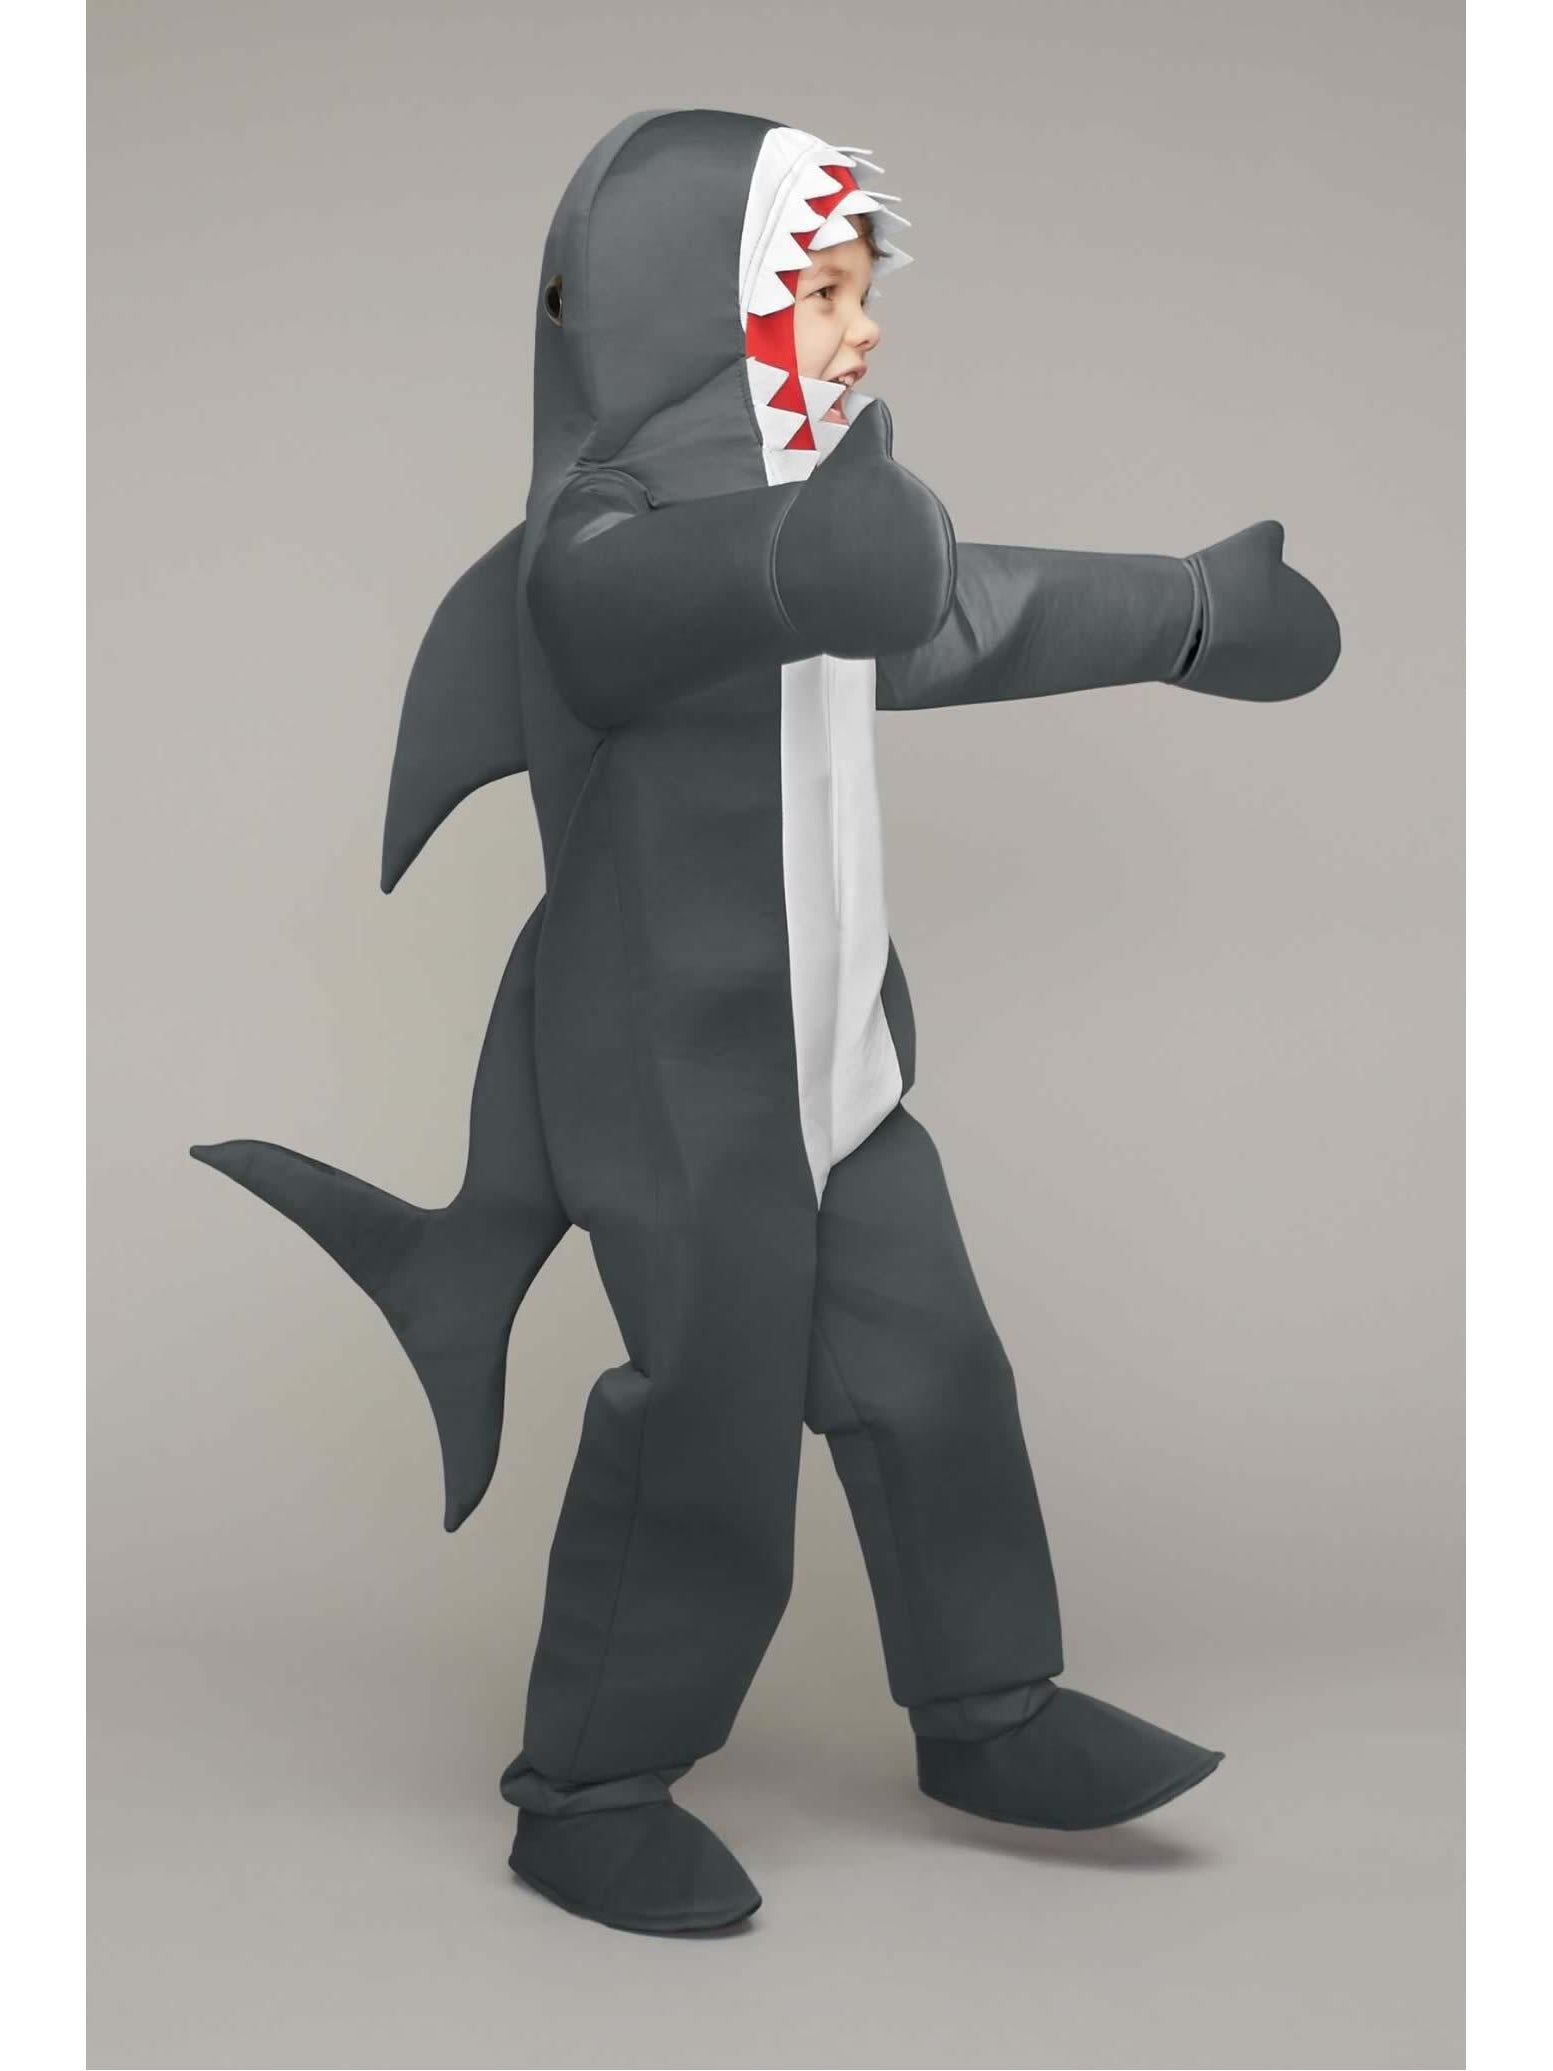 Great White Shark Costume for Kids